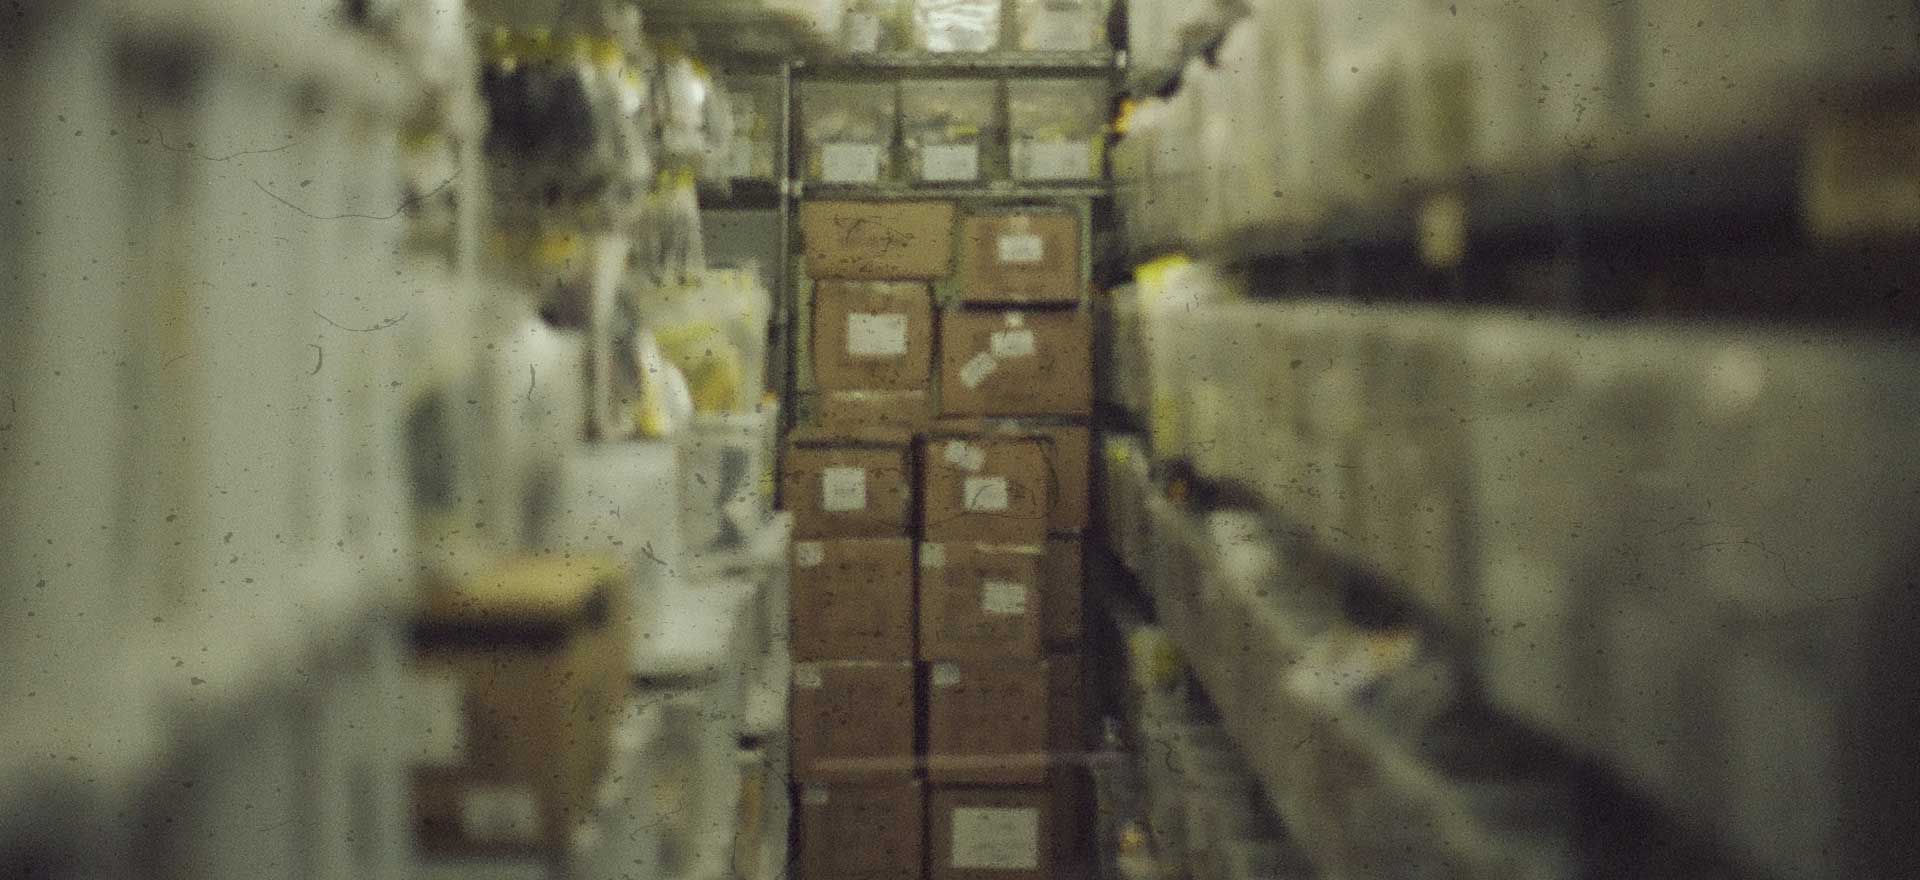 Gecom first warehouse